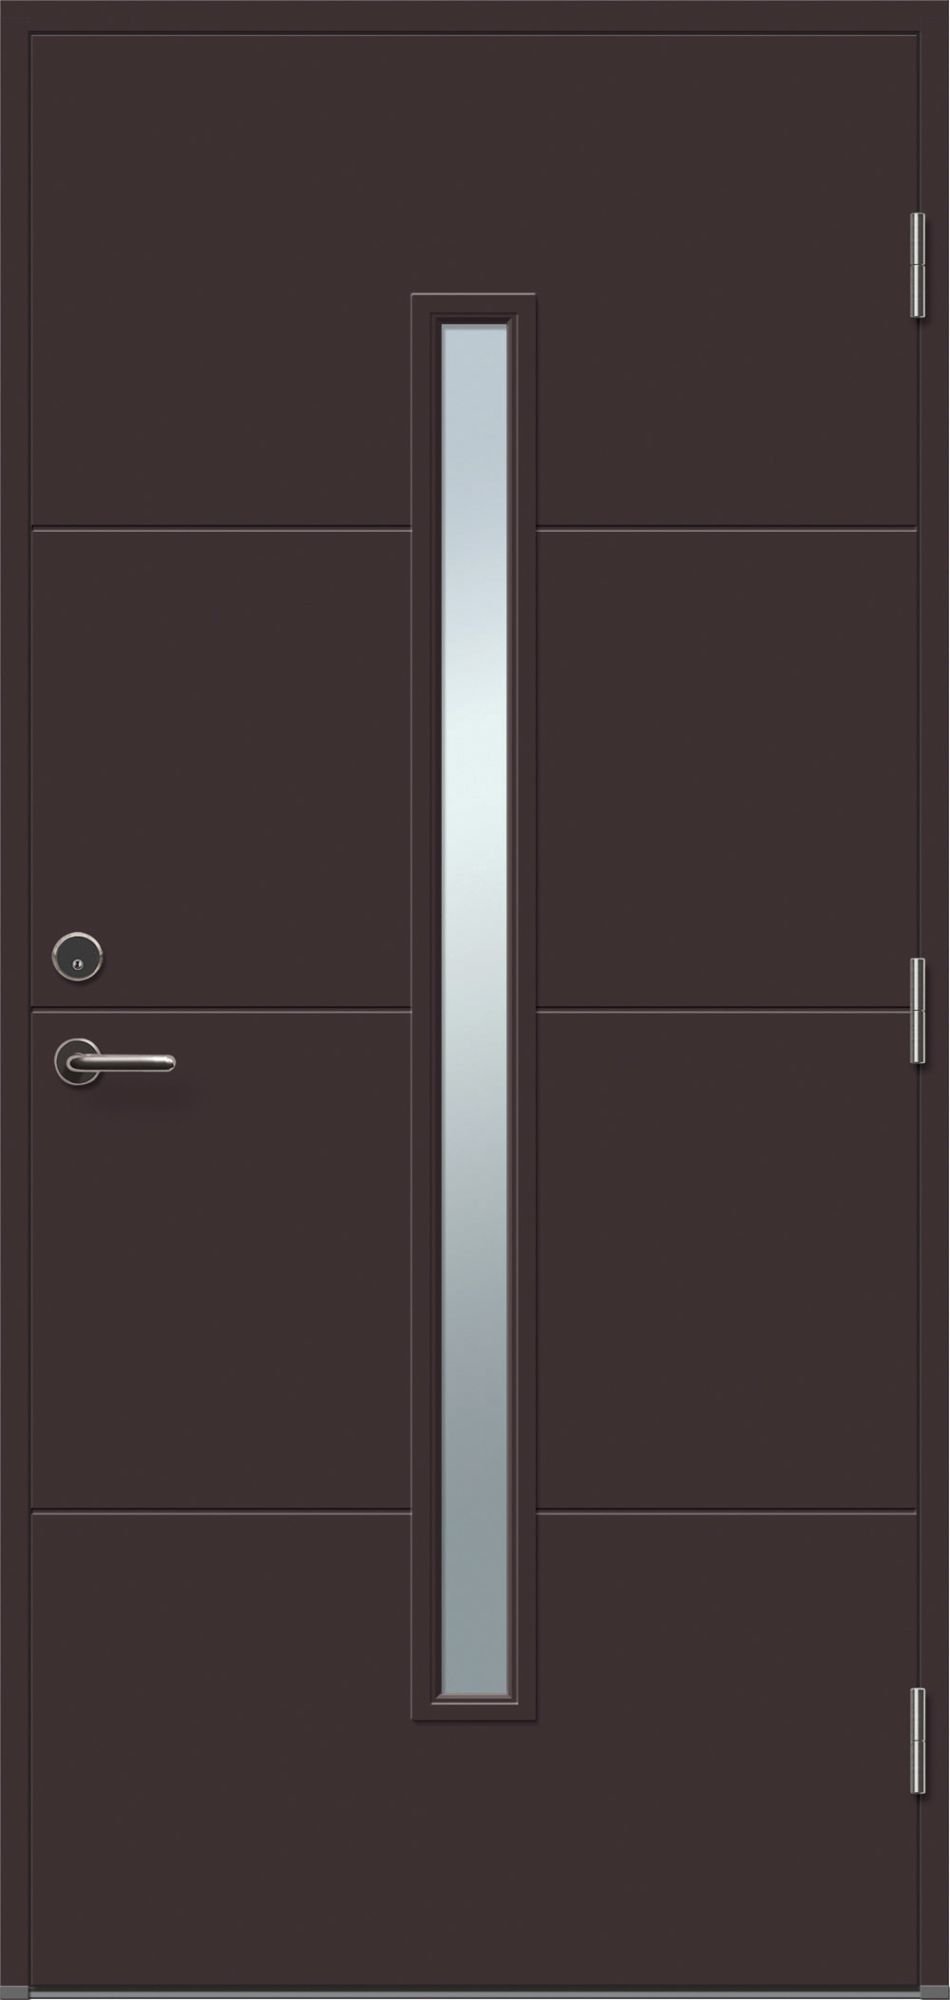 Lauko durys VILJANDI STORO1R T1, rudos sp., 890 x 2088 mm, dešinė